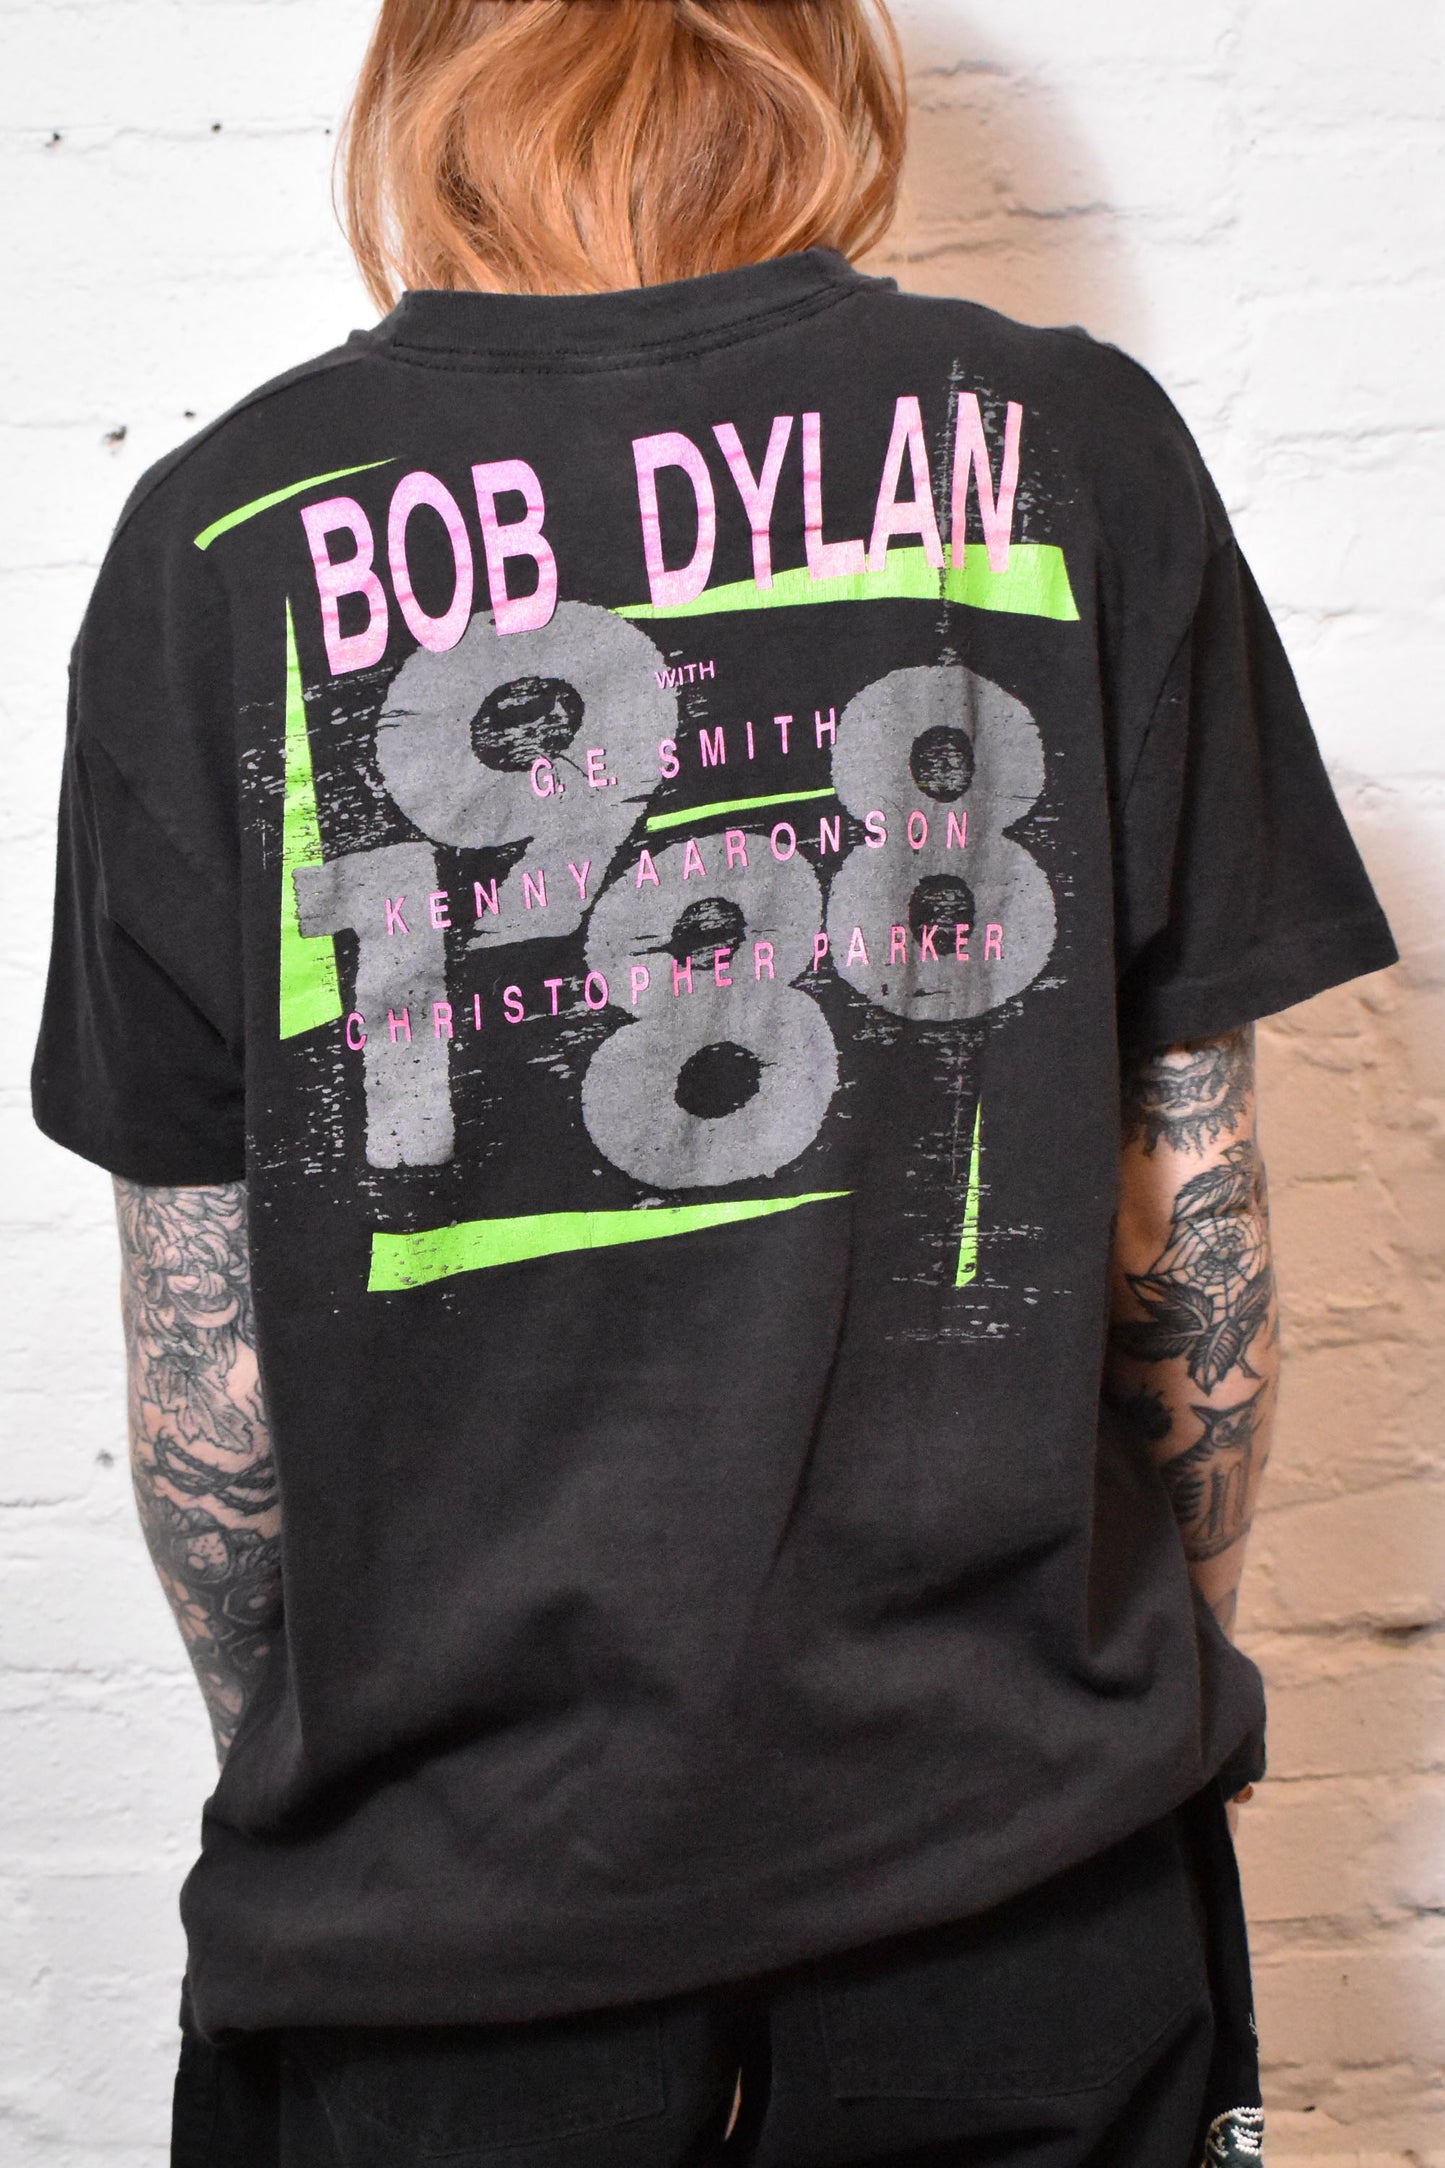 Vintage 1988 "Bob Dylan" Tour T-shirt